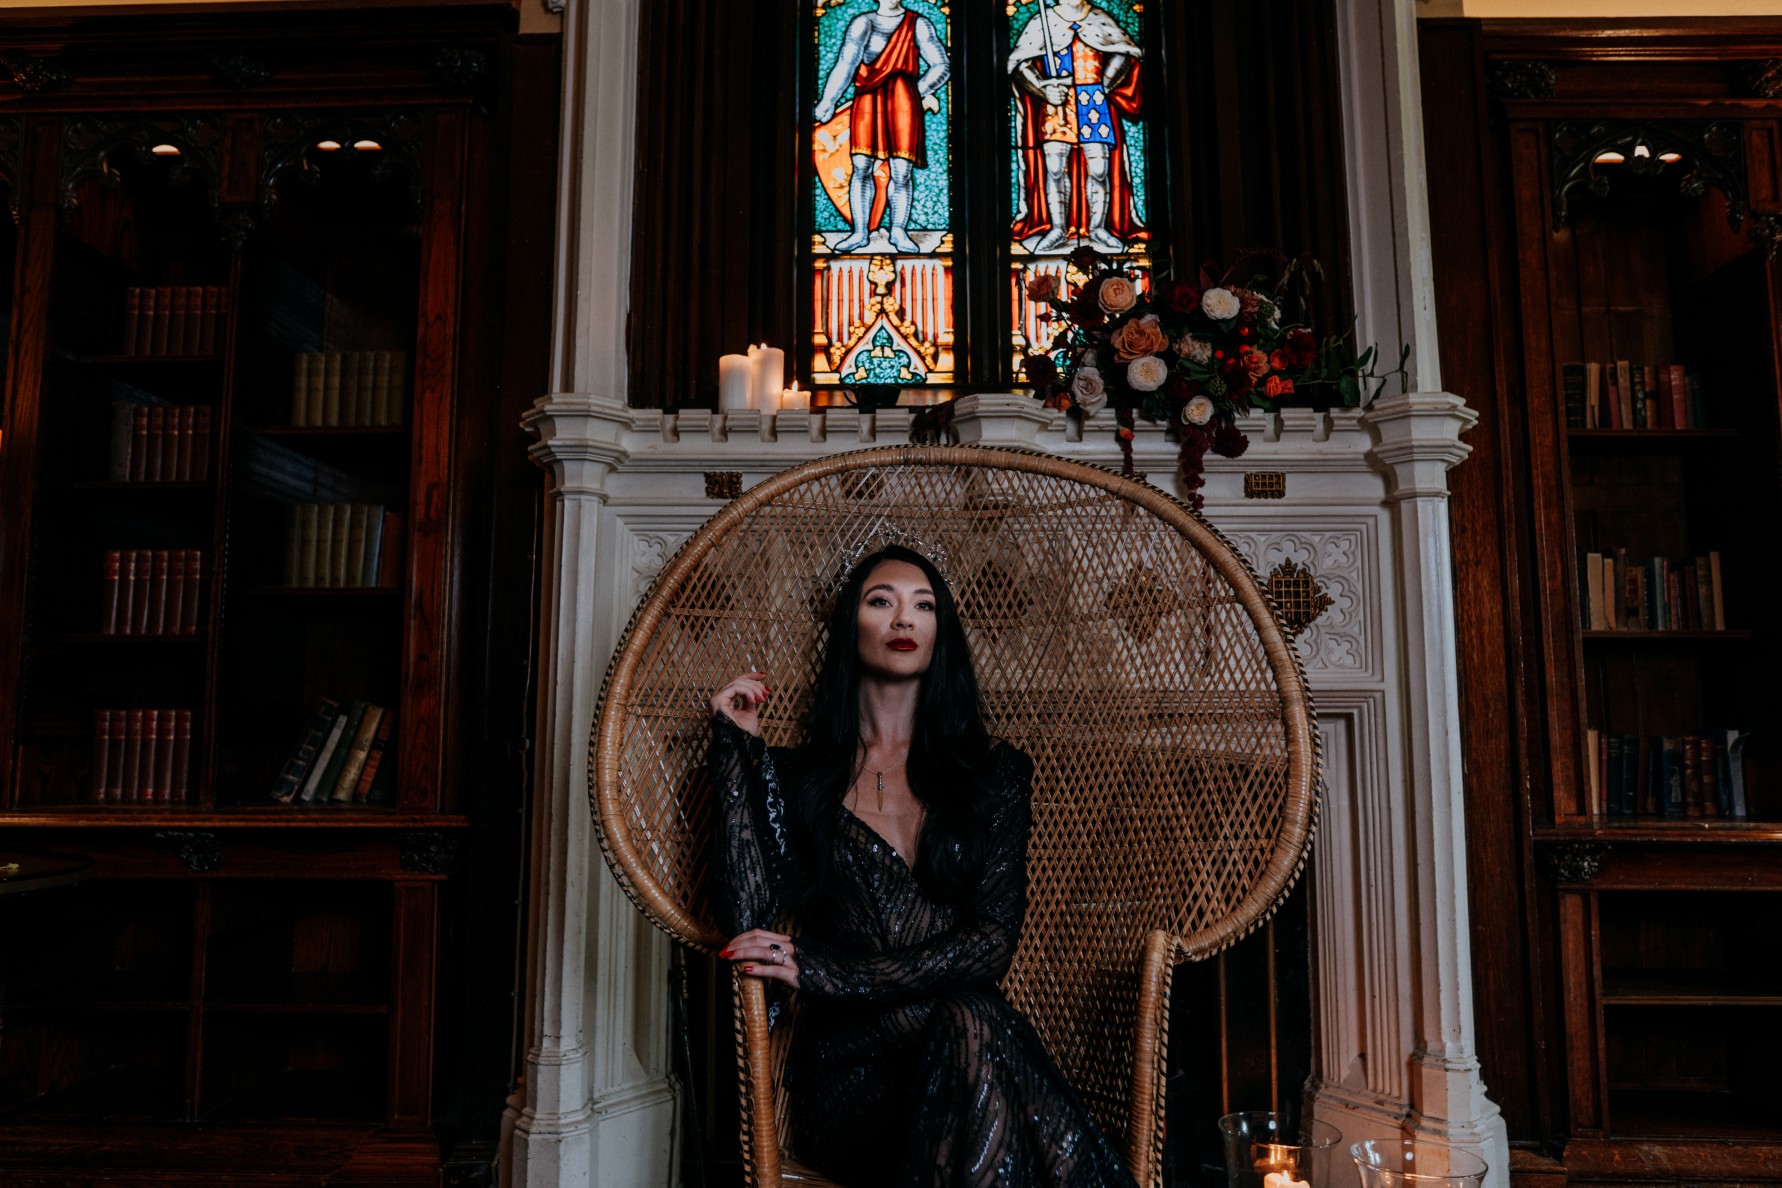 black wedding dress - gothic bride in wicker chair